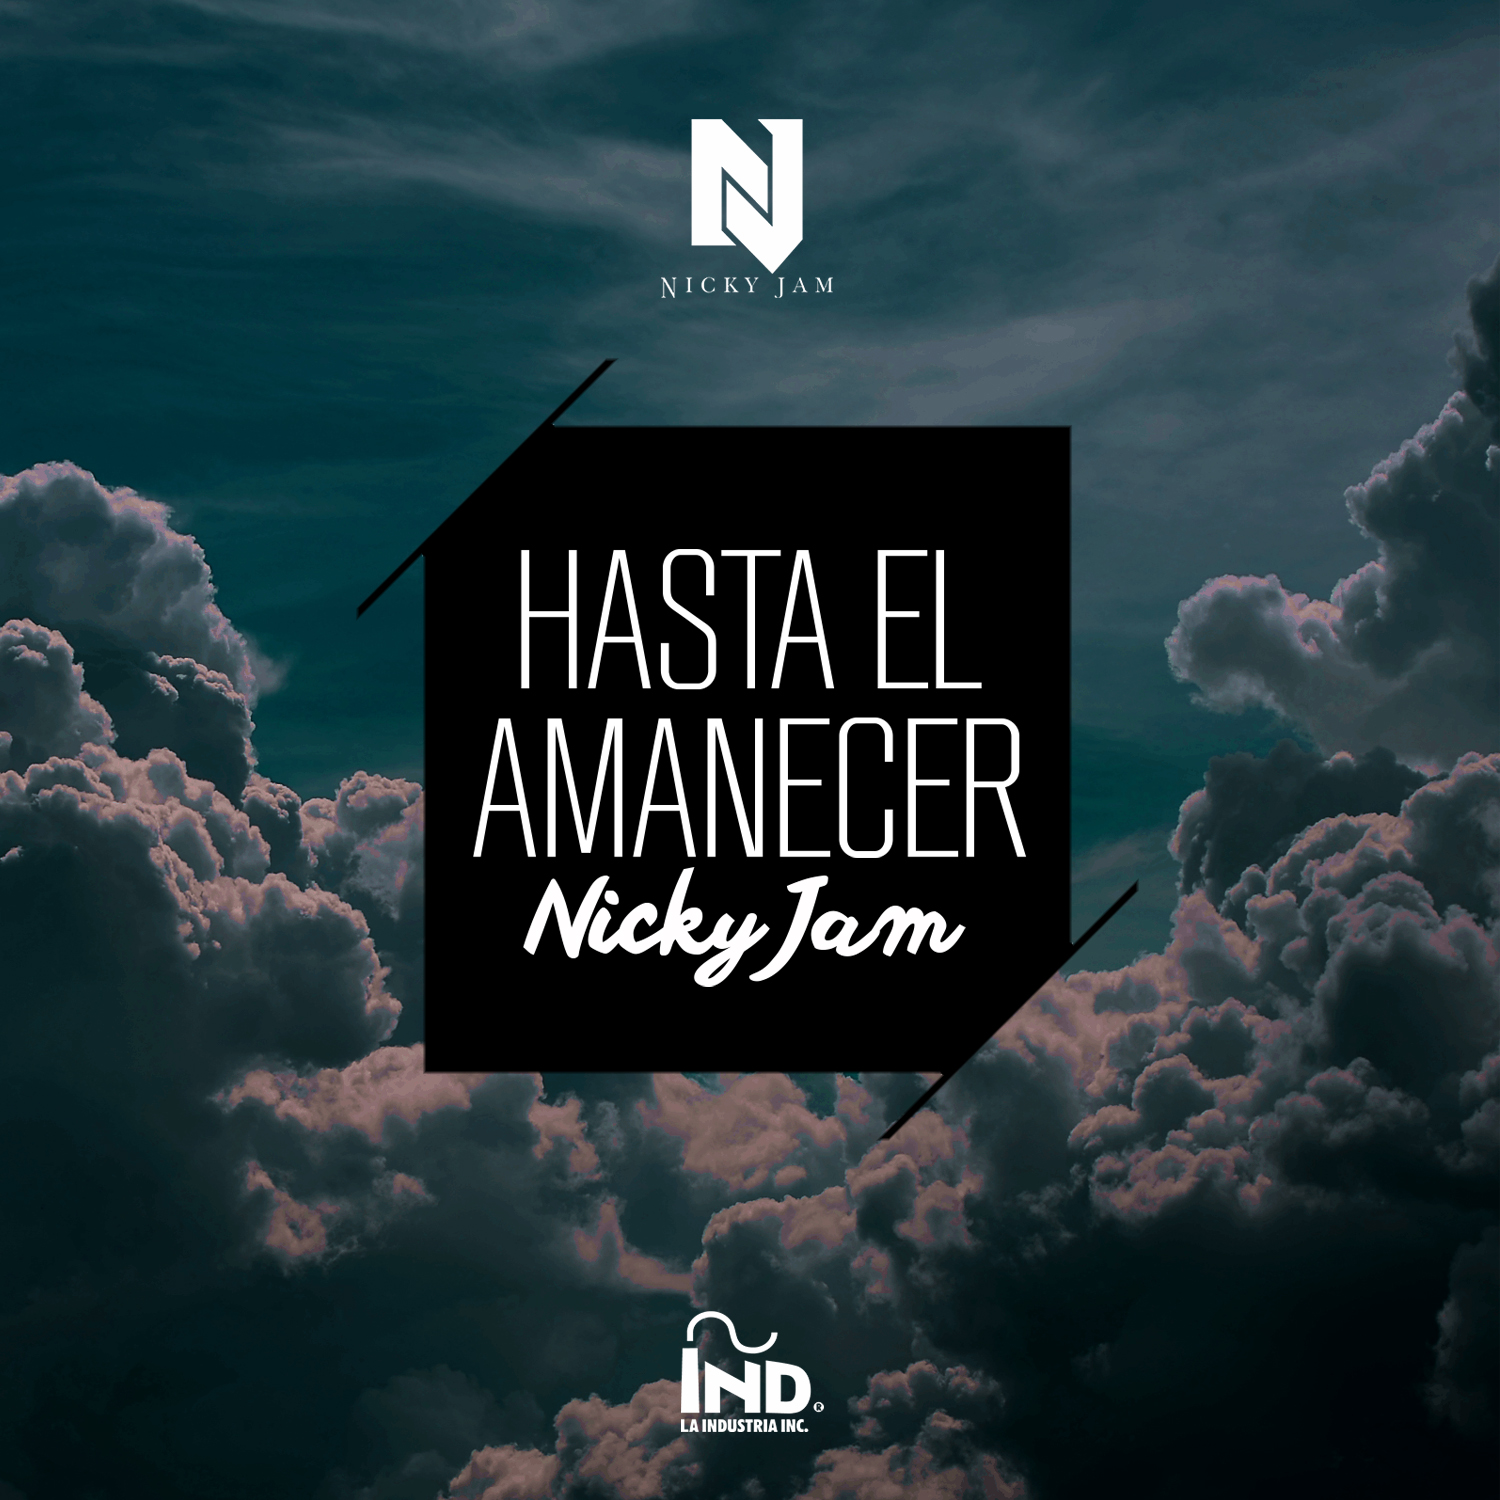  Nuevo sencillo de Nicky Jam / Hasta el amanecer